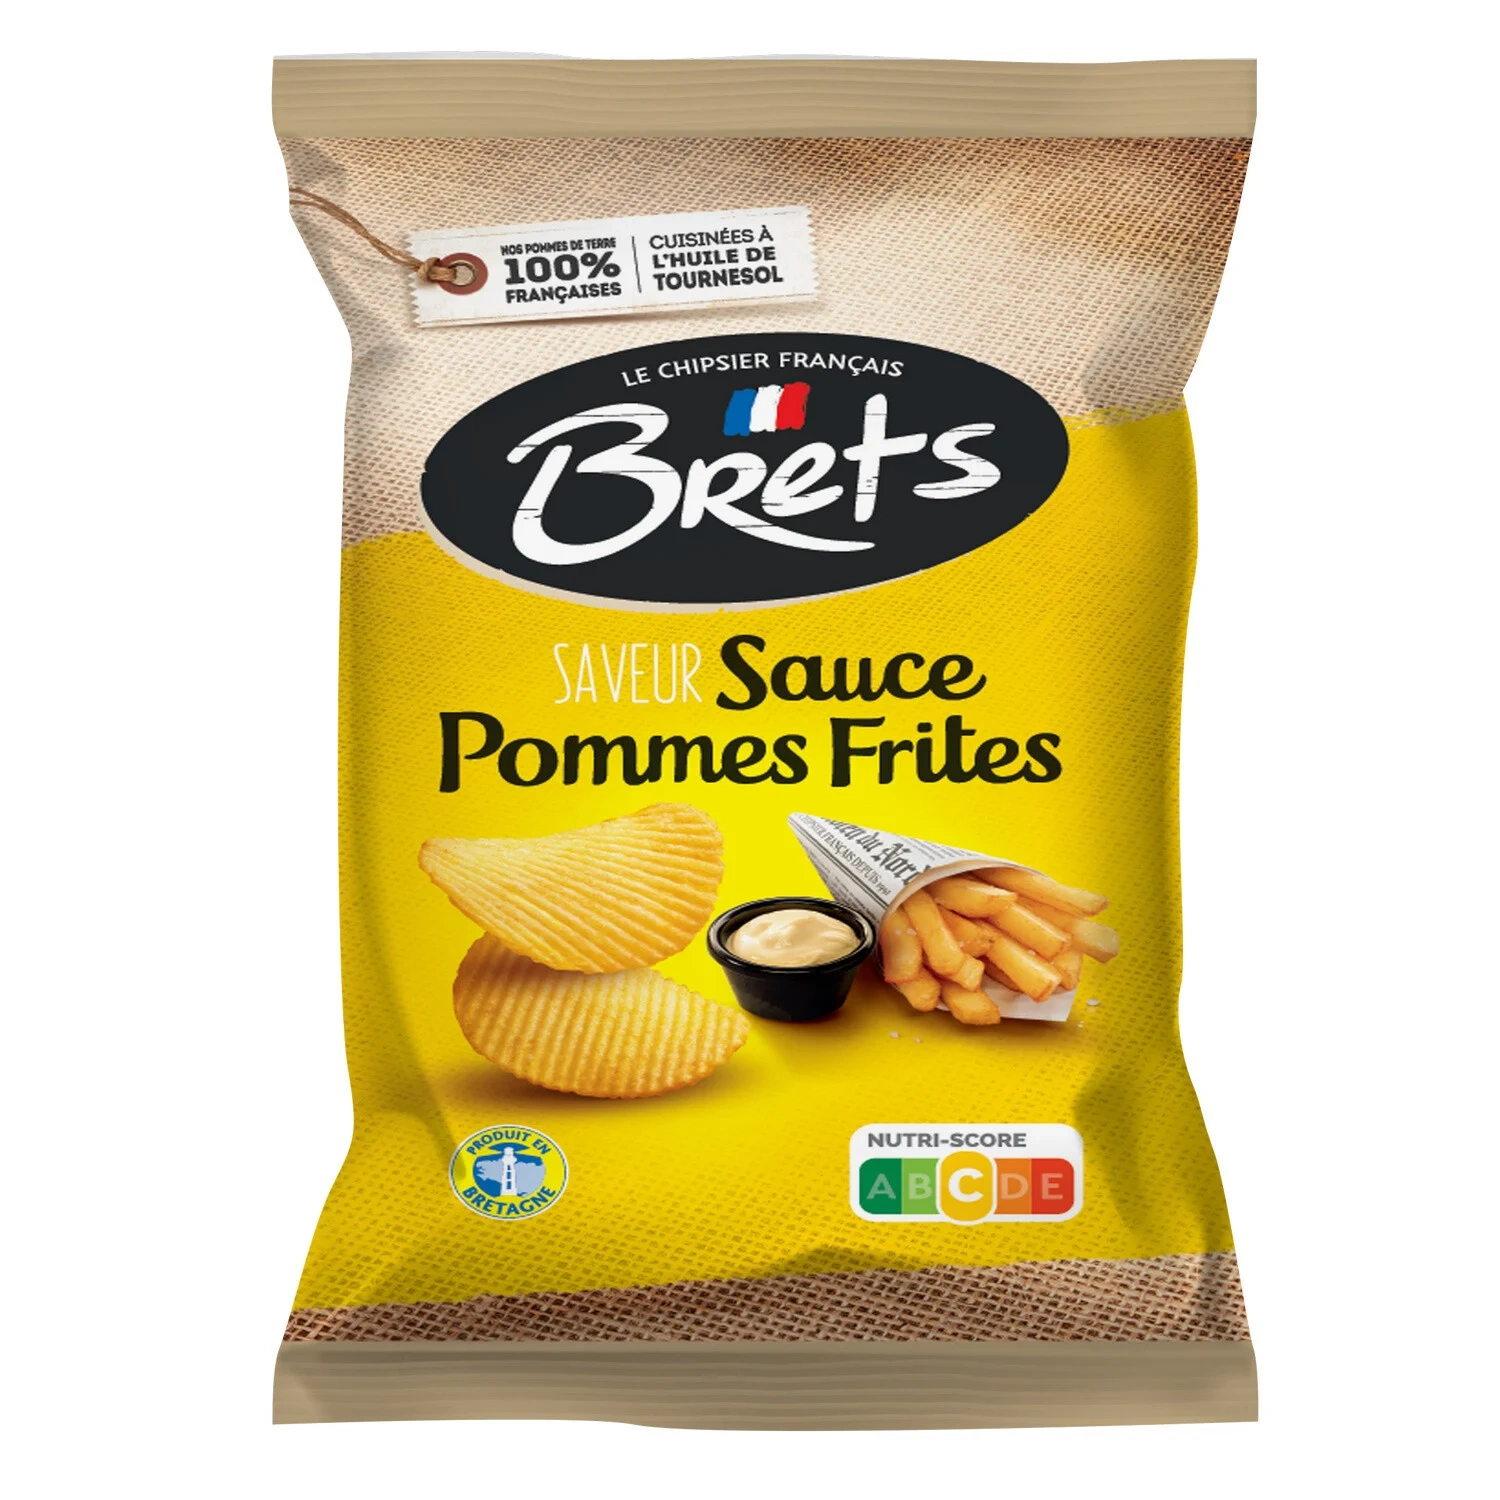 Bret's : une chips sur 3 consommée en France est bretonne ! - FFI